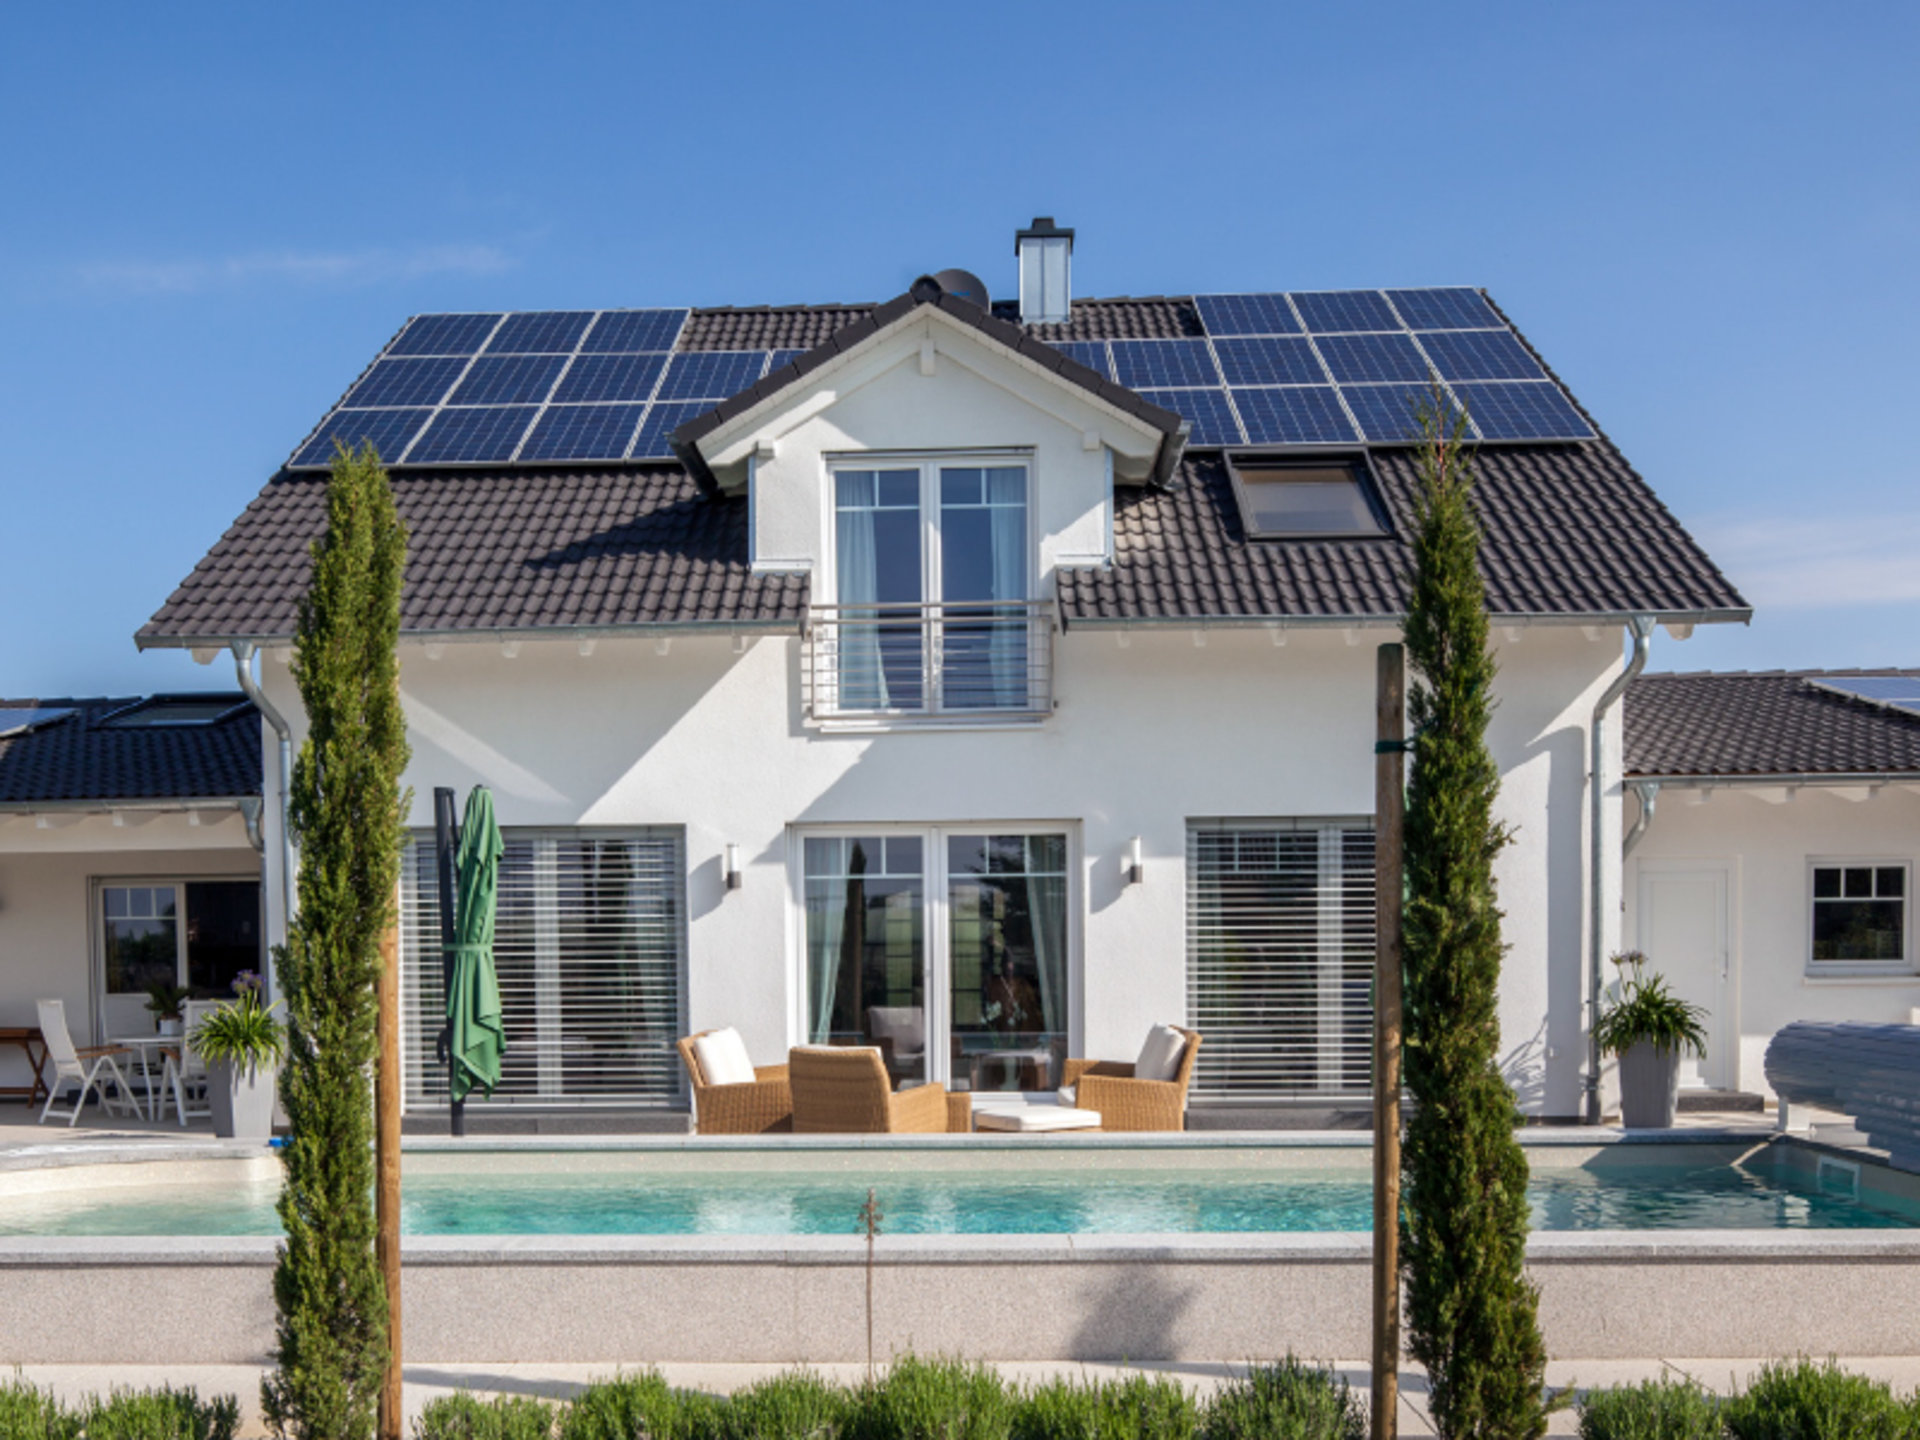 Haus Ungermann schont mit Solarstrom die Umwelt. (Foto: BAUMEISTER-HAUS)